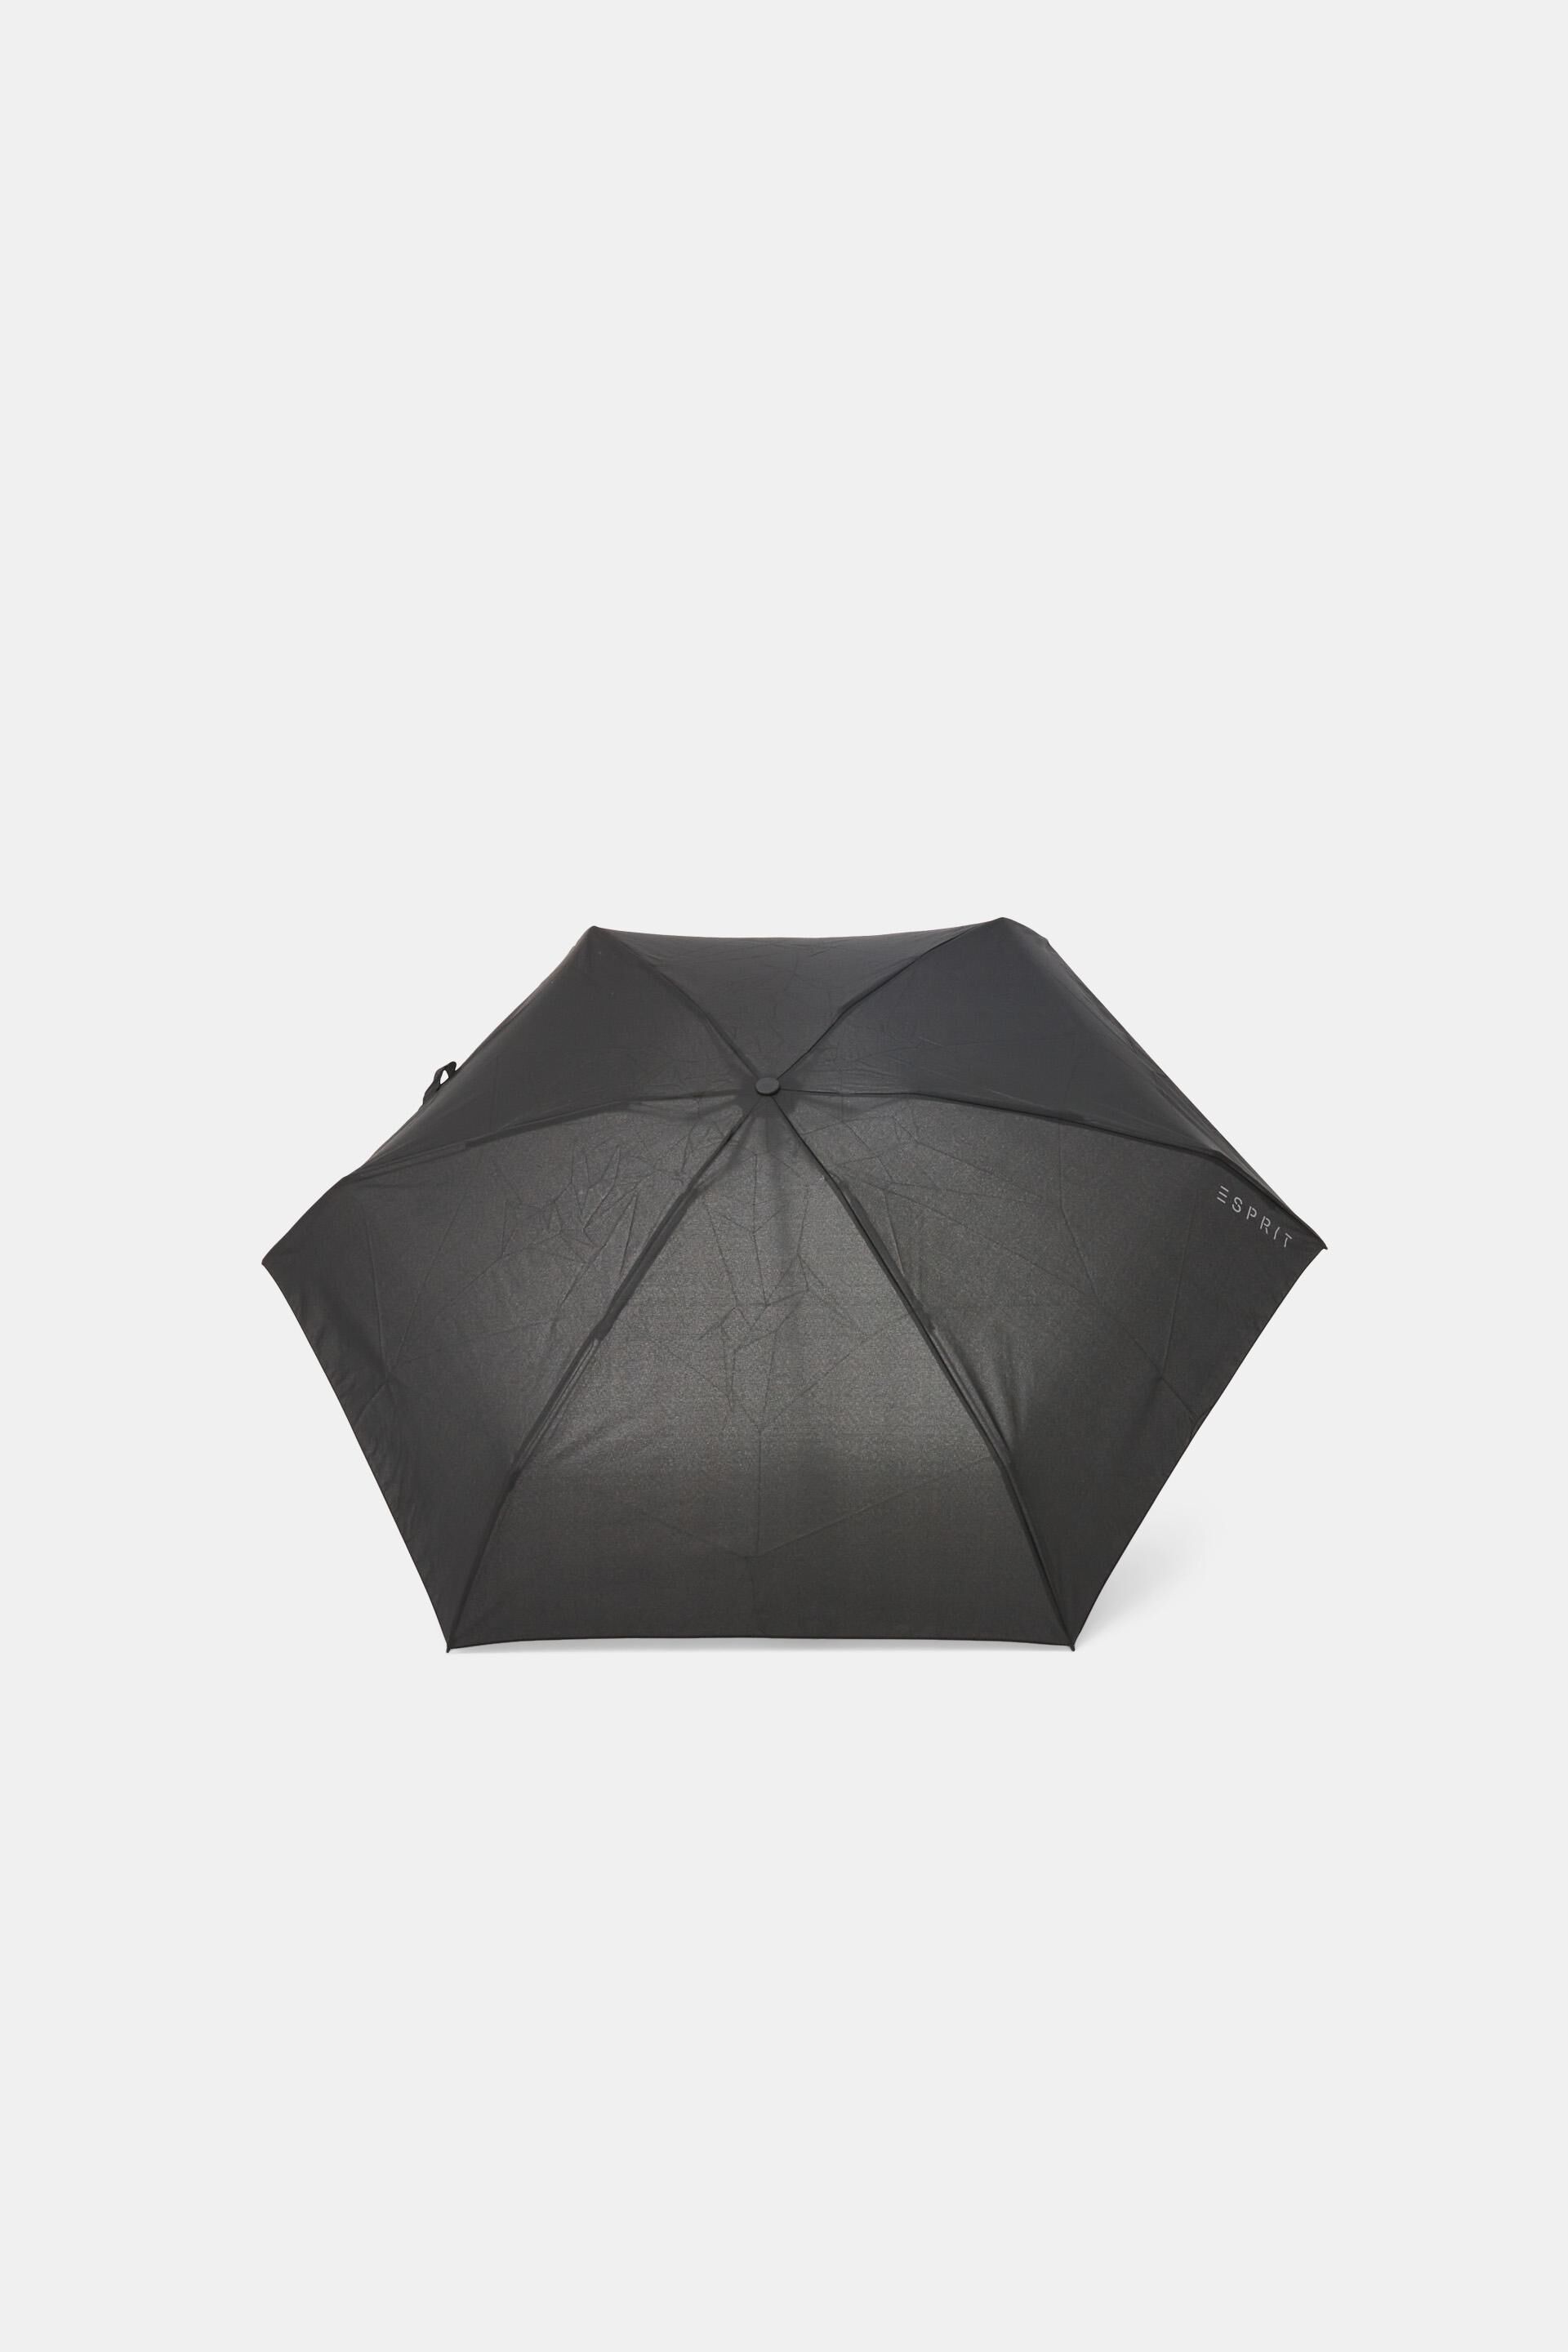 Esprit Plain pocket mini umbrella